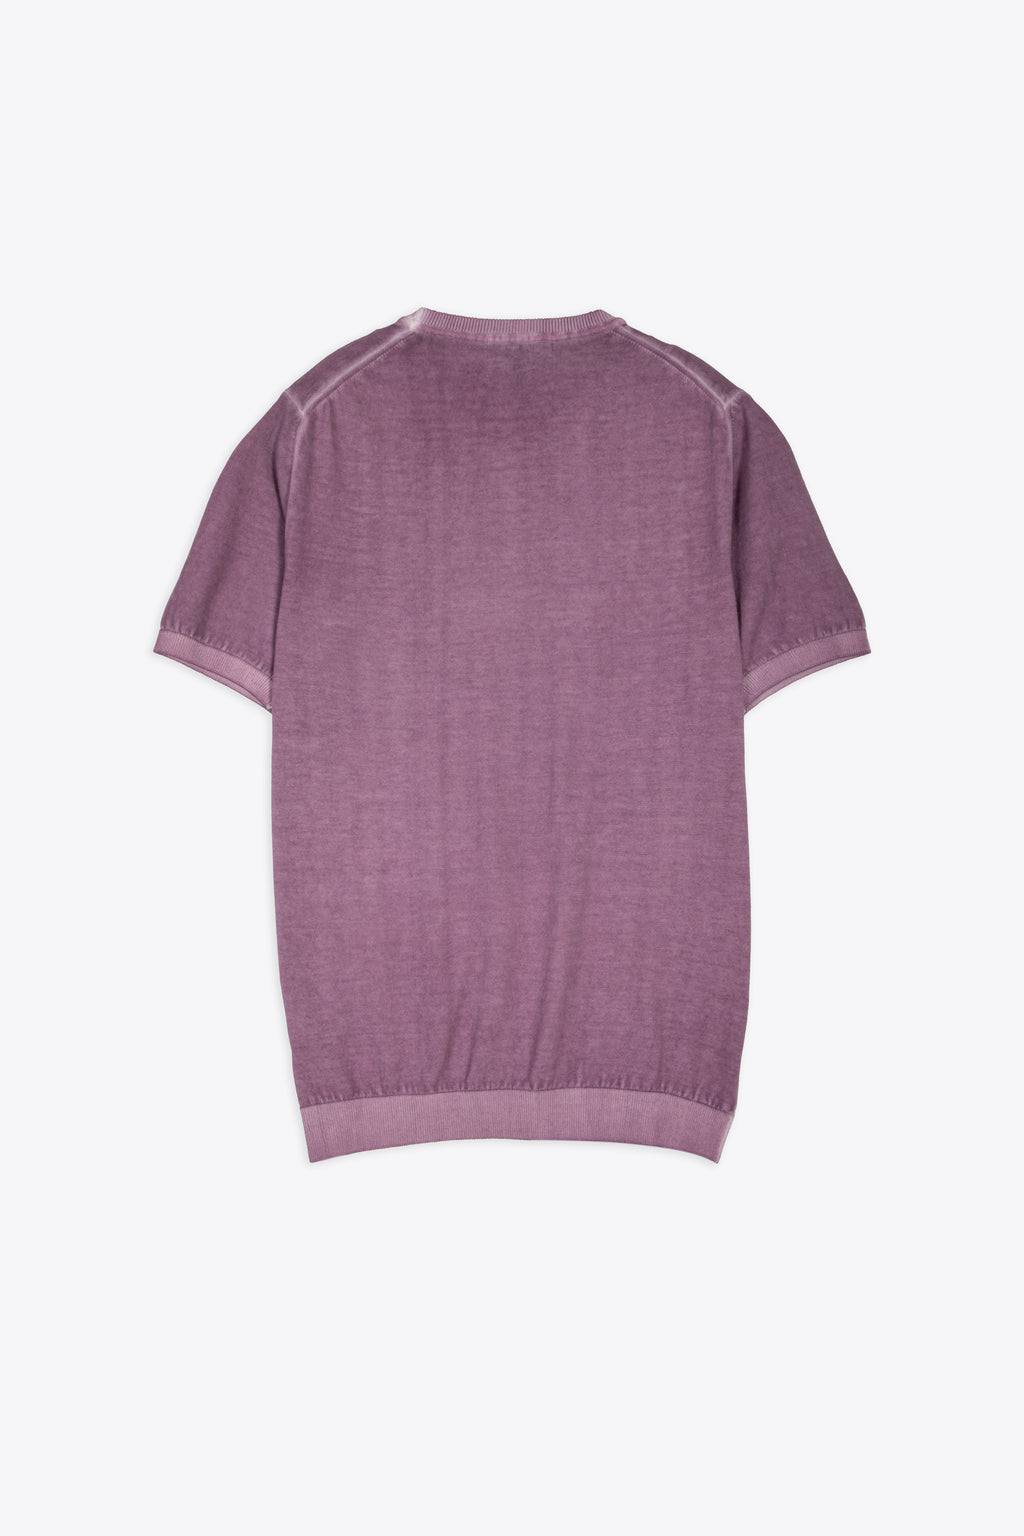 alt-image__Washed-purple-cotton-knit-t-shirt